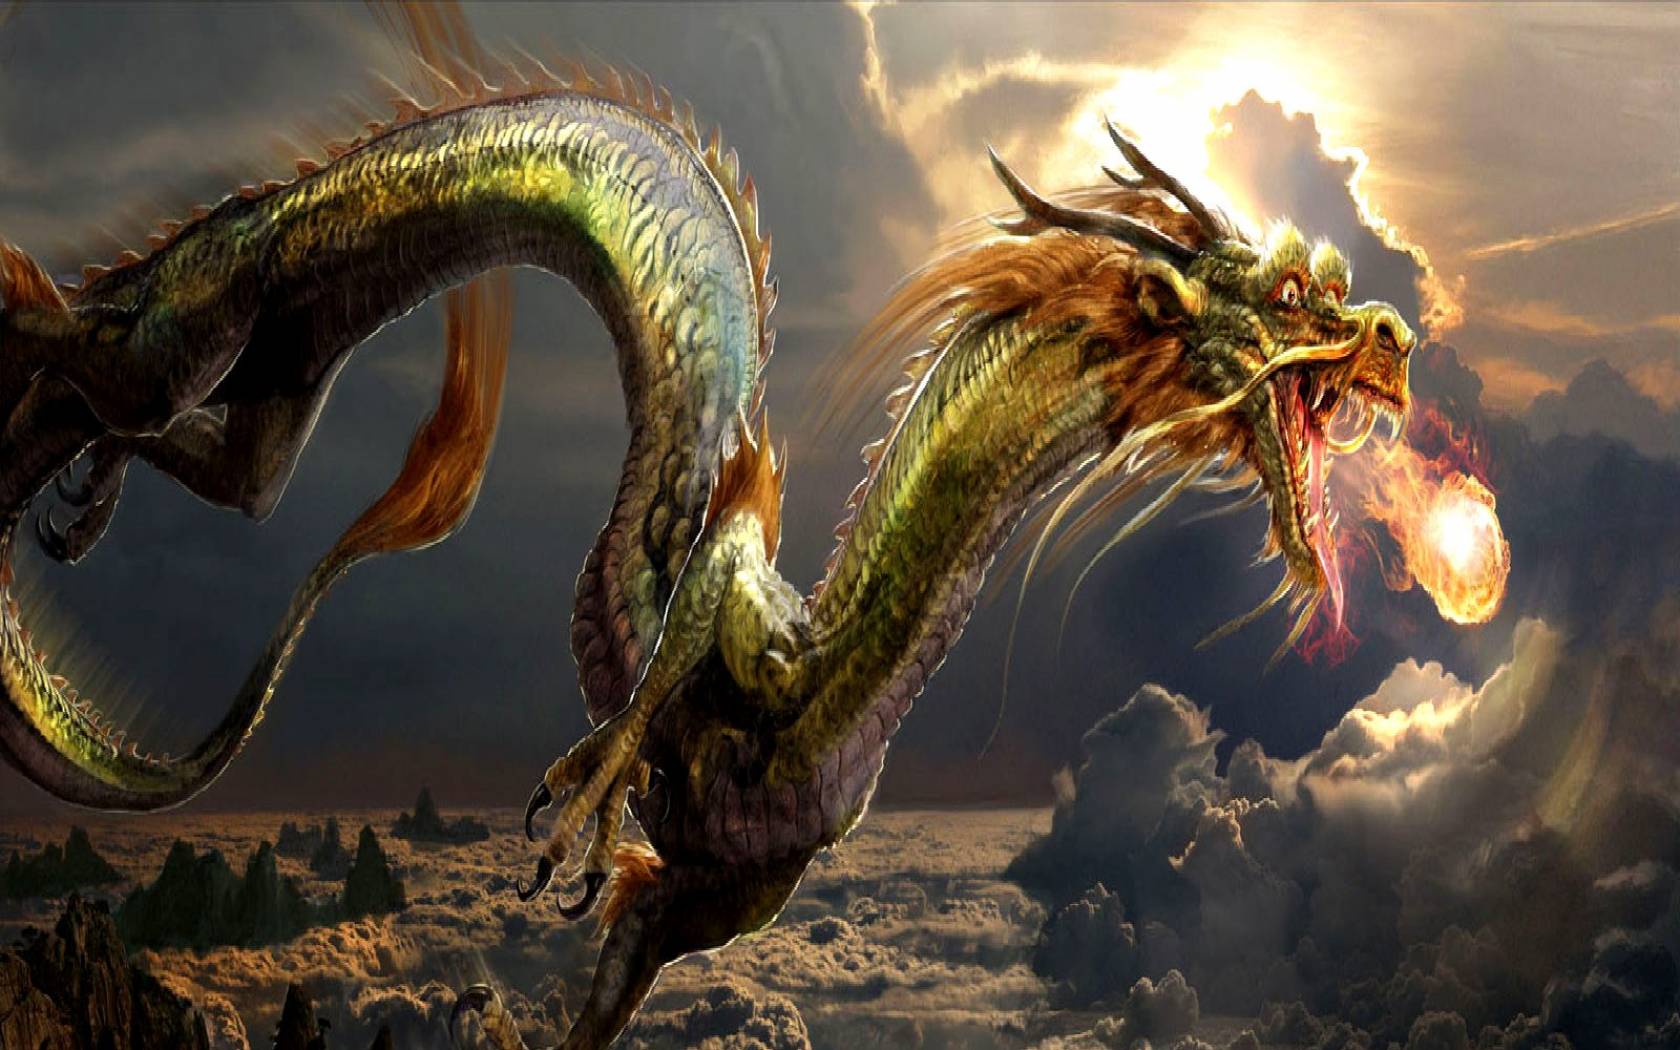 dragones fondos de pantalla hd,continuar,cg artwork,mitología,personaje de ficción,criatura mítica